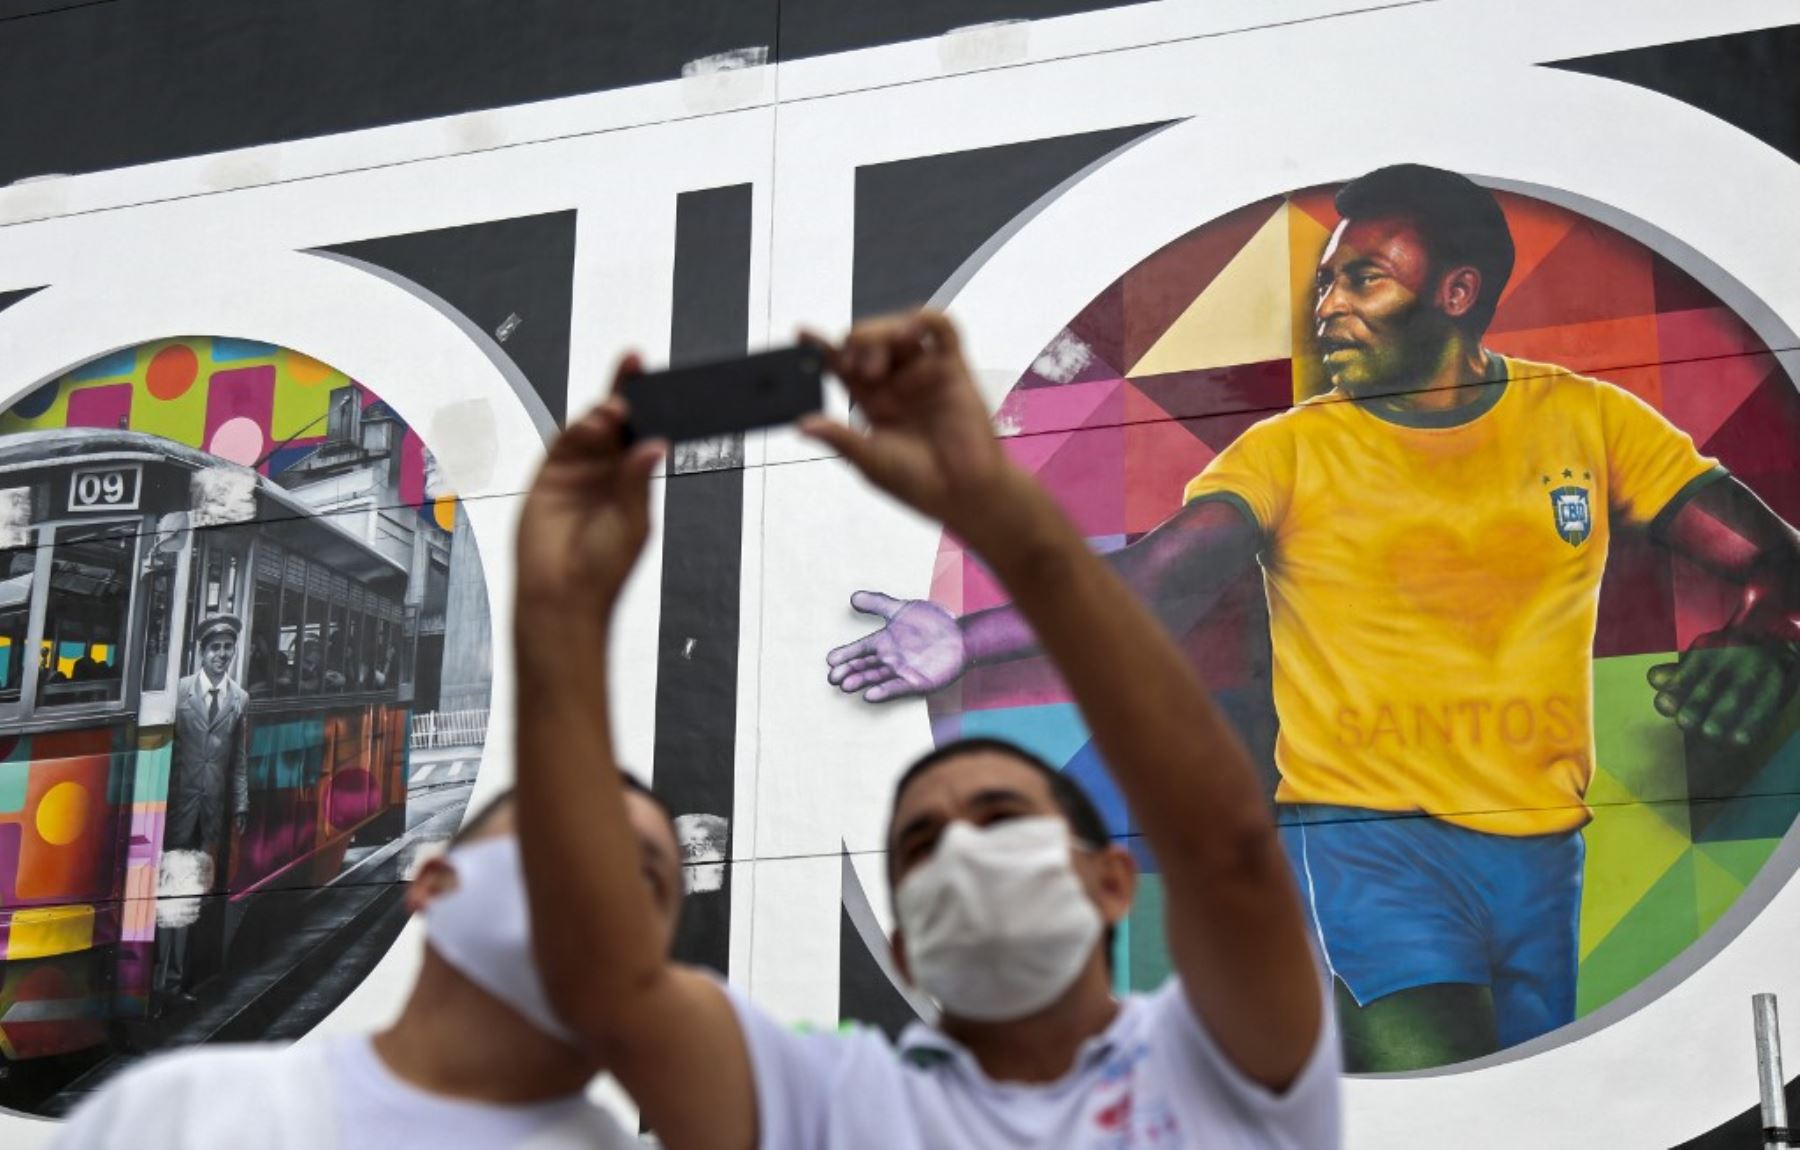 Los hombres se toman una selfie con un mural del artista brasileño Kobra que representa a la estrella del fútbol brasileño retirado Edson Arantes do Nascimento, conocido como Pele. Foto: AFP